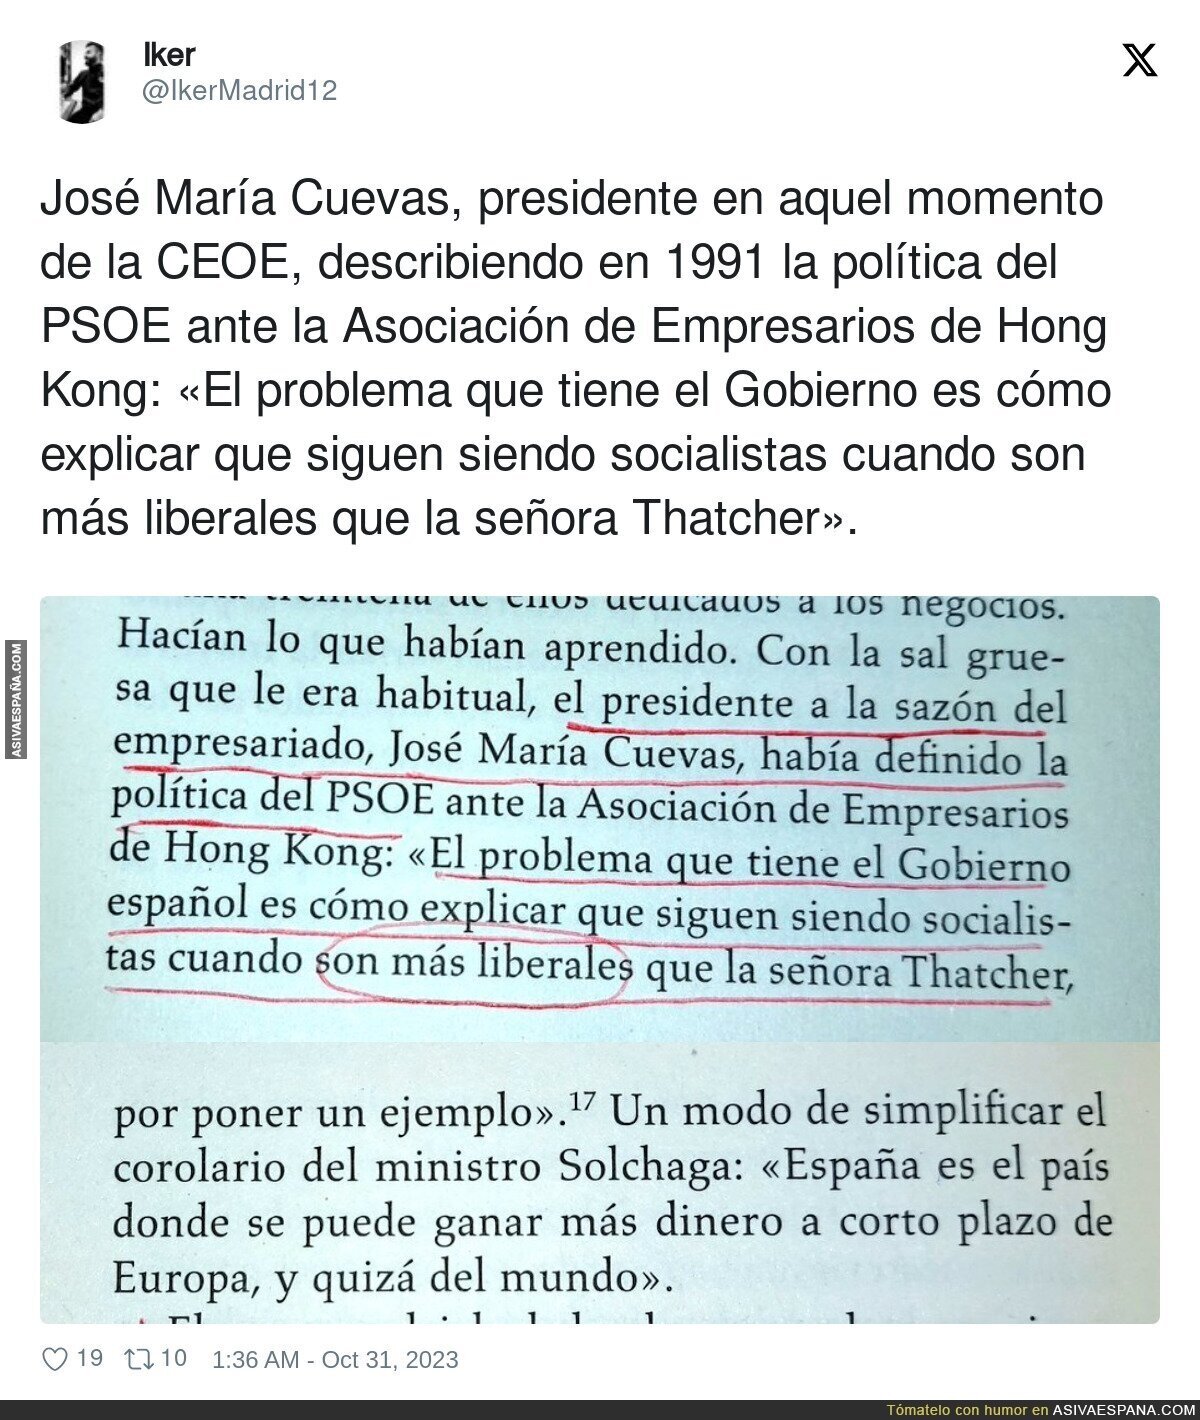 José María Cuevas describió bien al PSOE